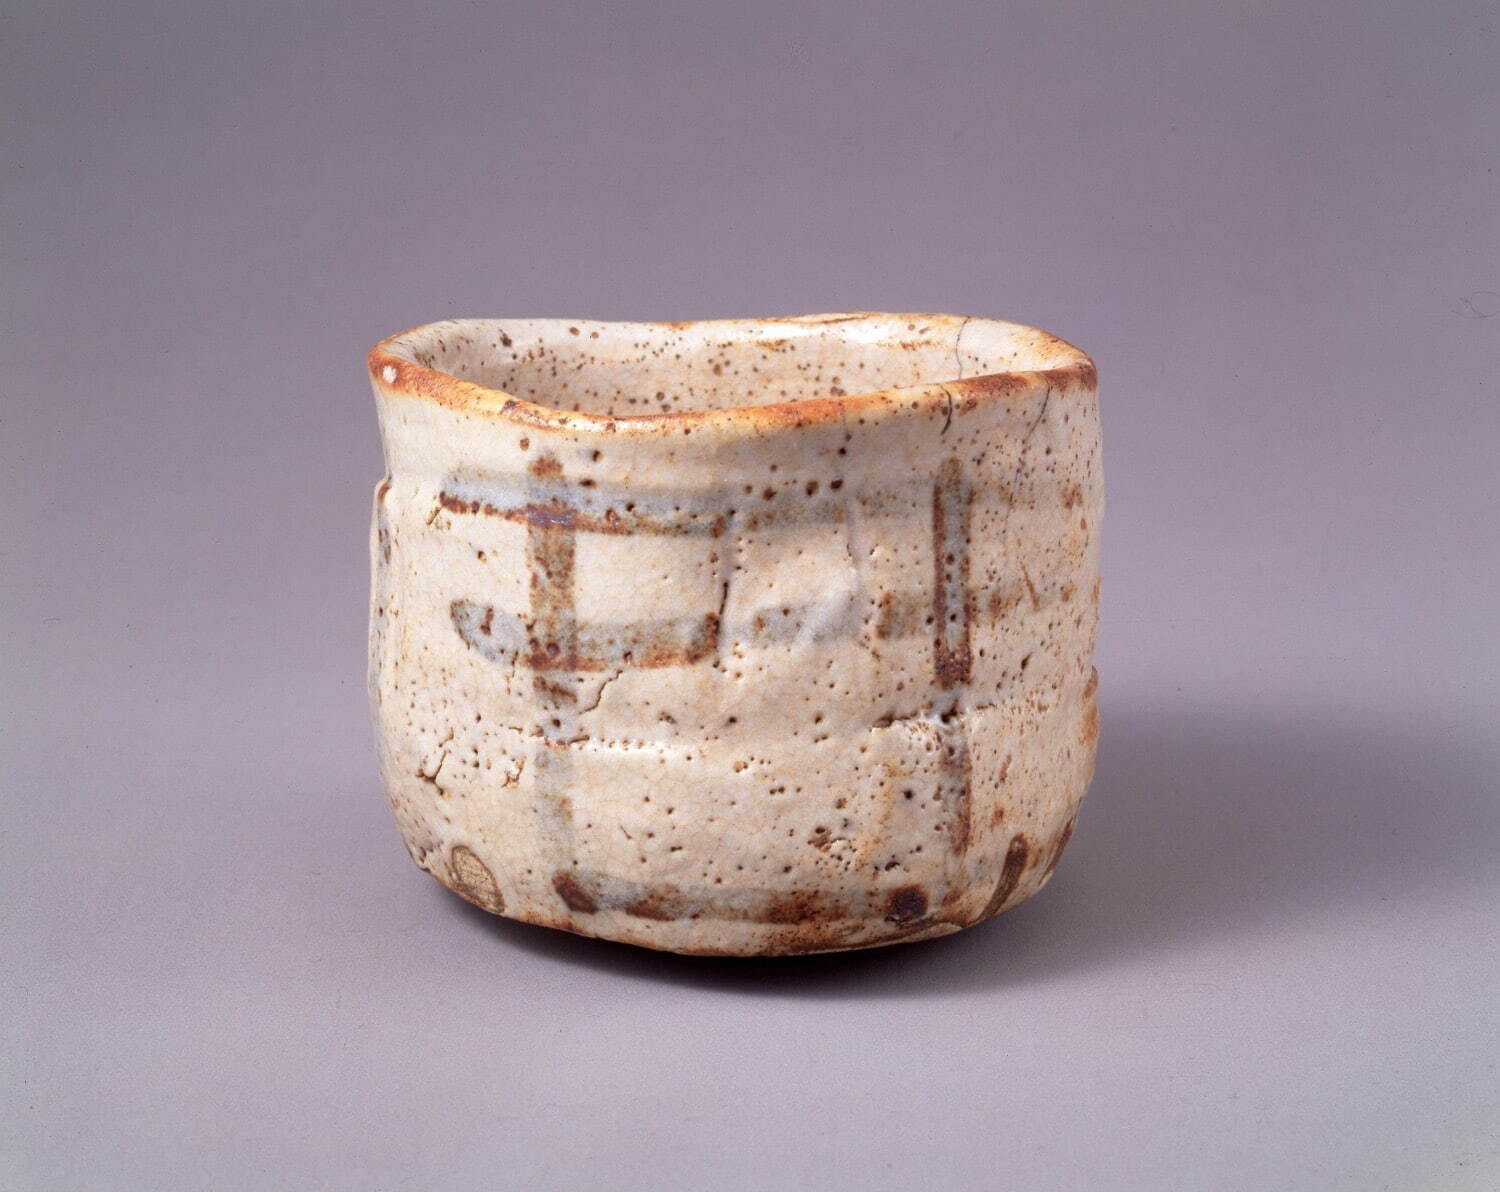 国宝 《志野茶碗 銘 卯花墻》 1口
桃山時代 16-17世紀 三井記念美術館蔵